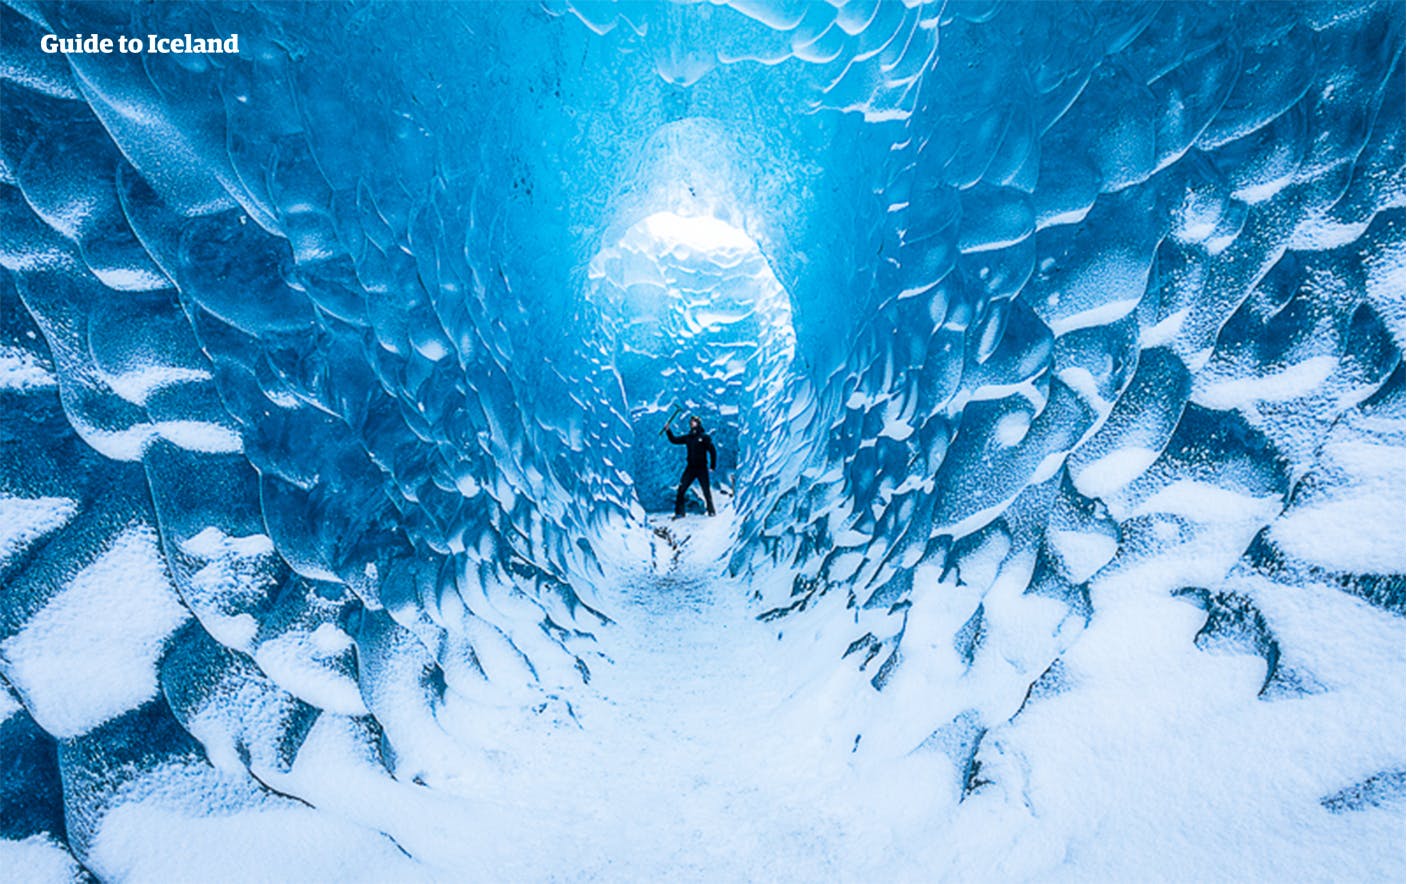 La grotte de glace bleue à l'intérieur de Vatnajökull, le plus grand glacier d'Europe, est une véritable merveille de l'Islande que peu d'habitants ont même connue